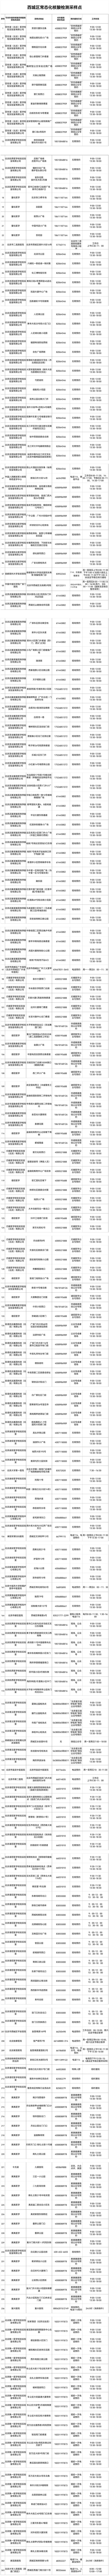 北京市西城區設立263個免費常態化核酸檢測採樣點